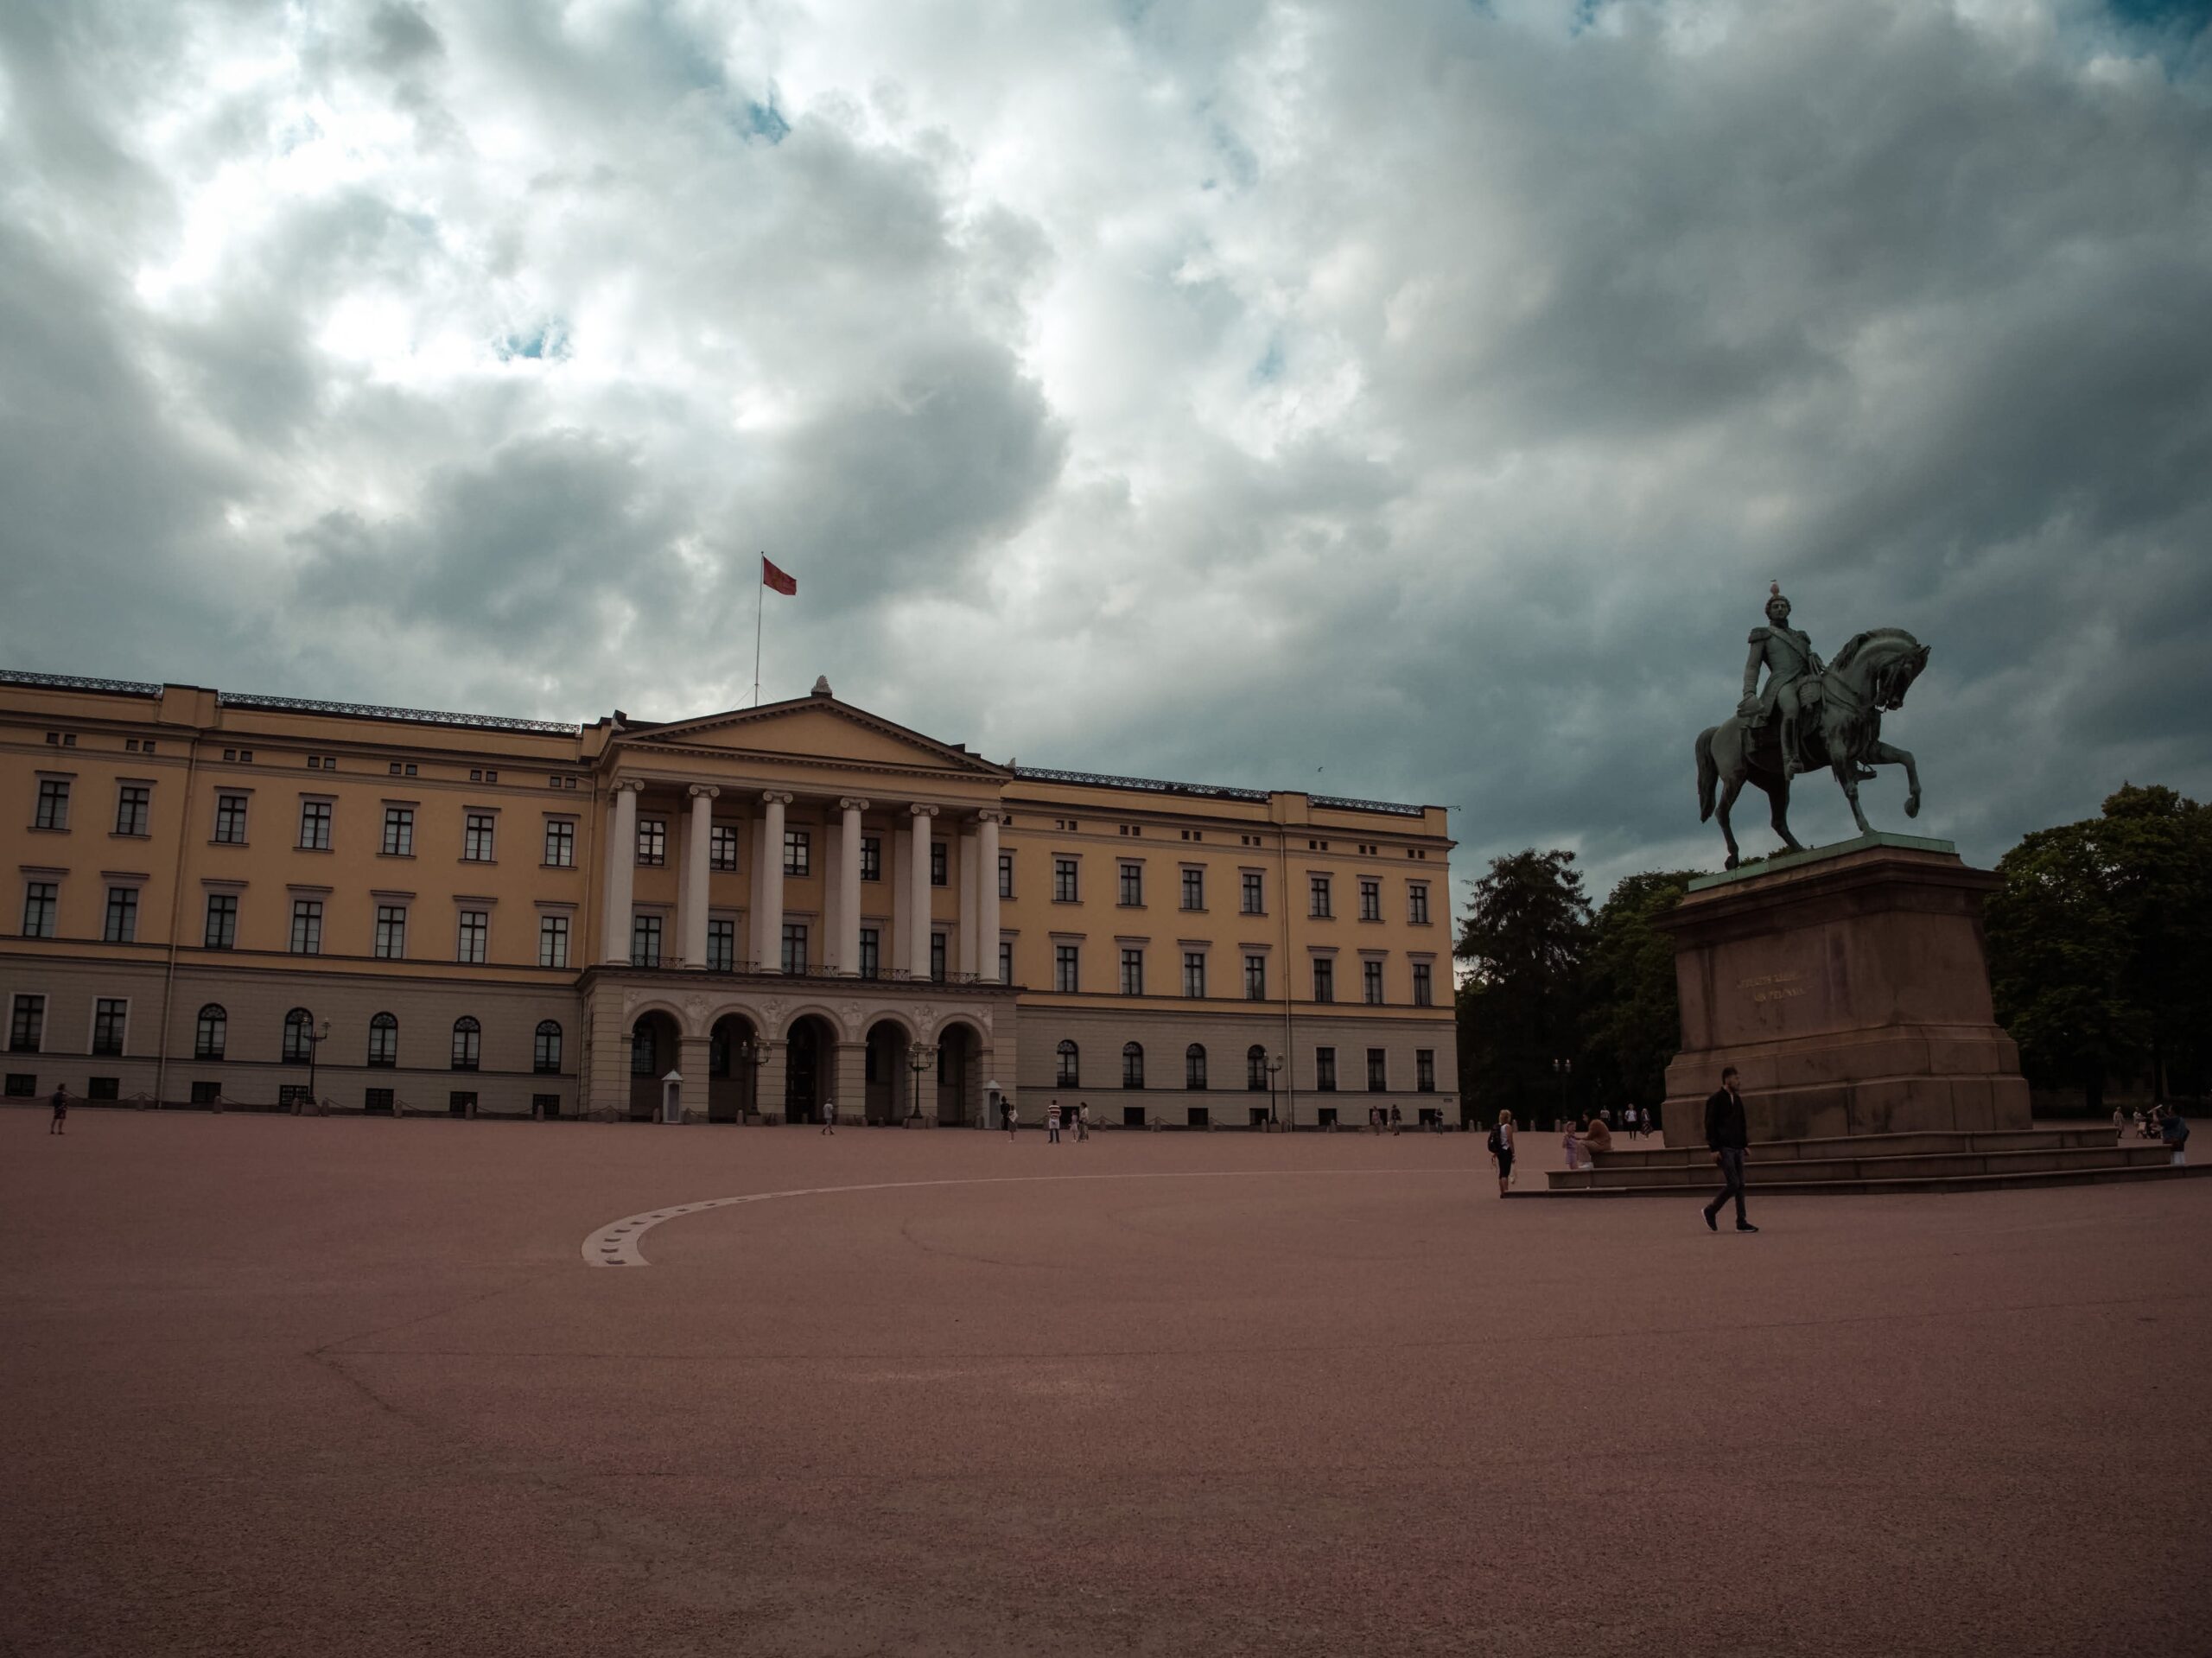 Pałac Królewski w Oslo